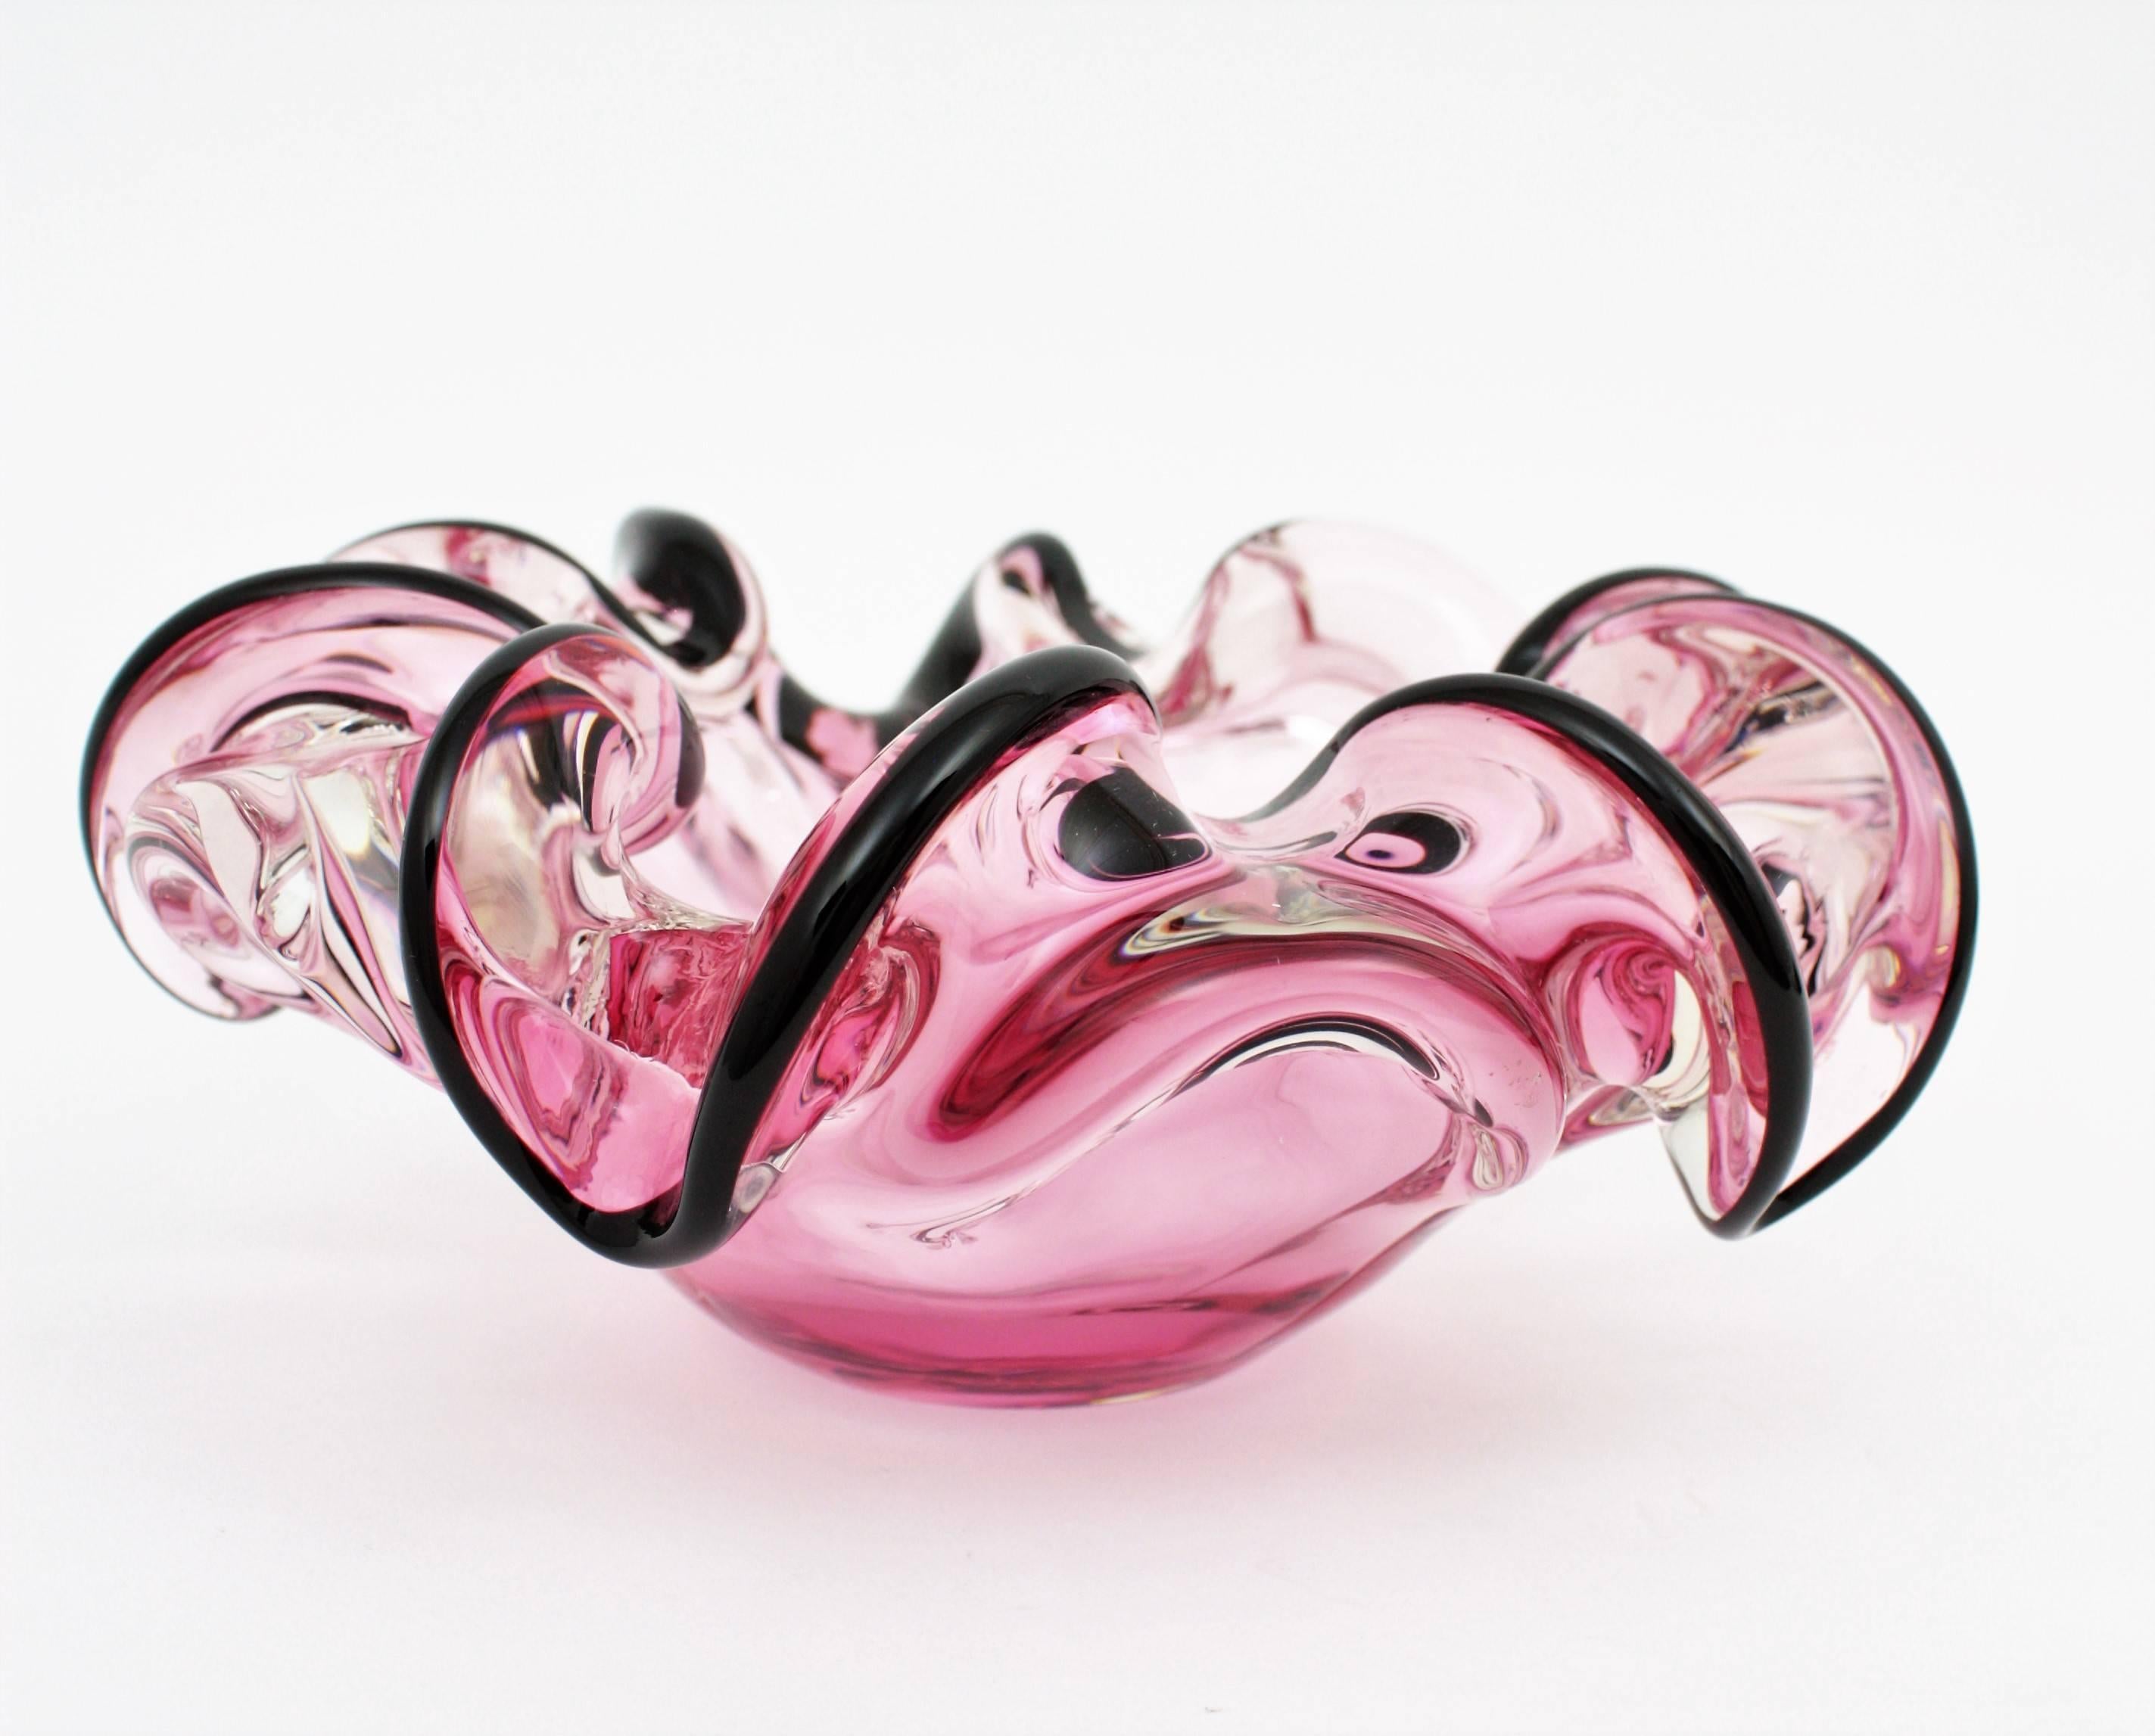 Italian 1960s Handblown Pink and Black Sommero Murano Art Glass Flower Bowl 6